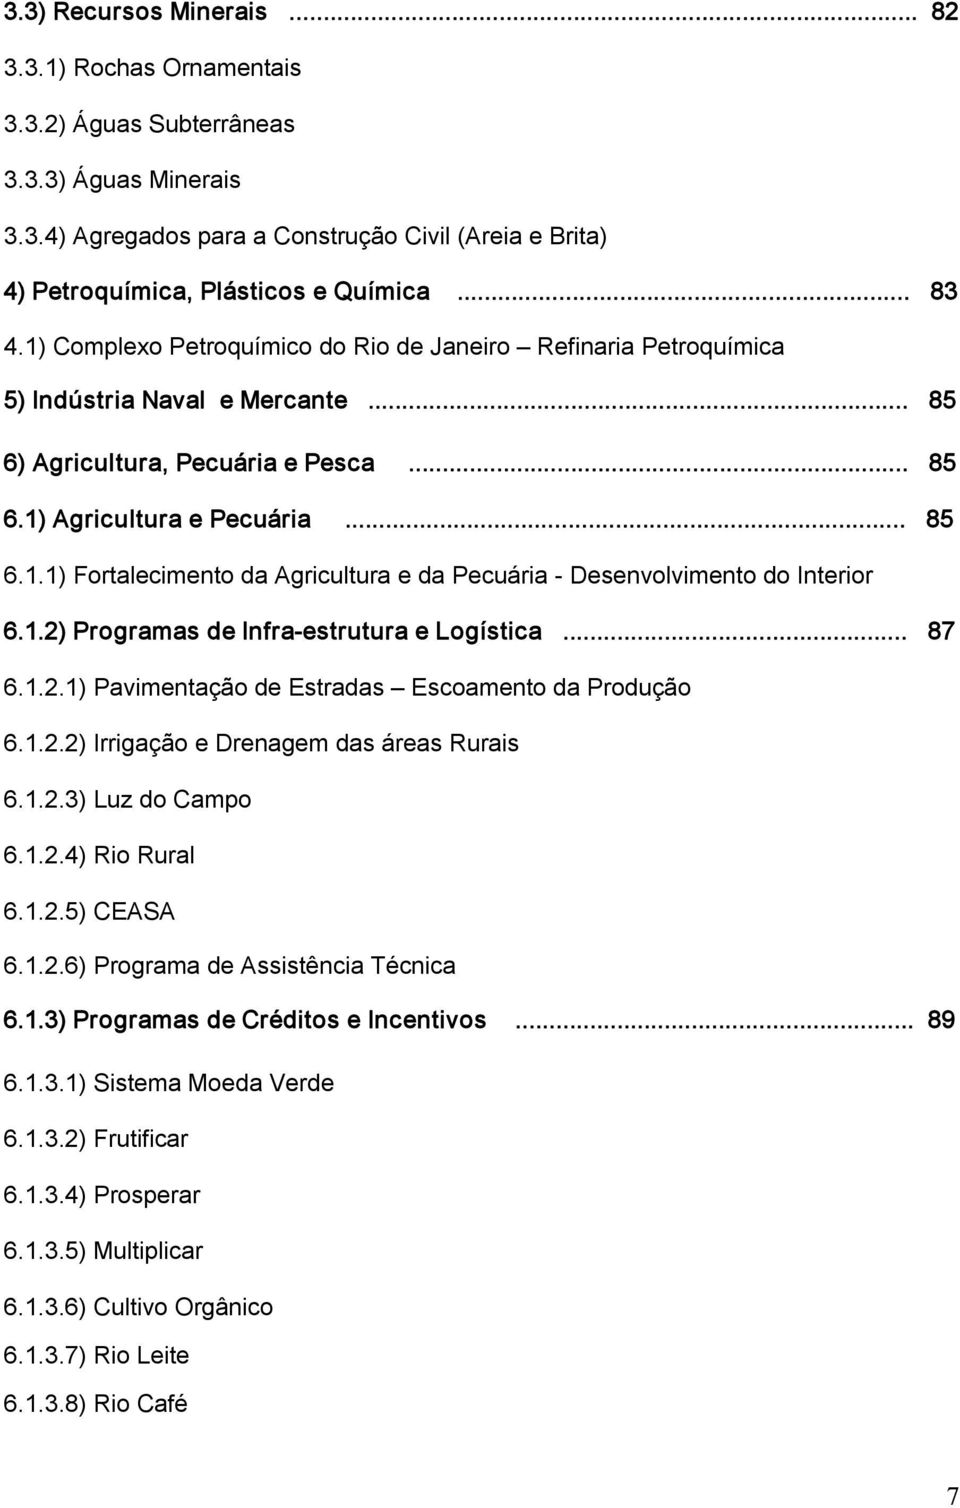 1.2) Programas de Infra estrutura e Logística... 87 6.1.2.1) Pavimentação de Estradas Escoamento da Produção 6.1.2.2) Irrigação e Drenagem das áreas Rurais 6.1.2.3) Luz do Campo 6.1.2.4) Rio Rural 6.